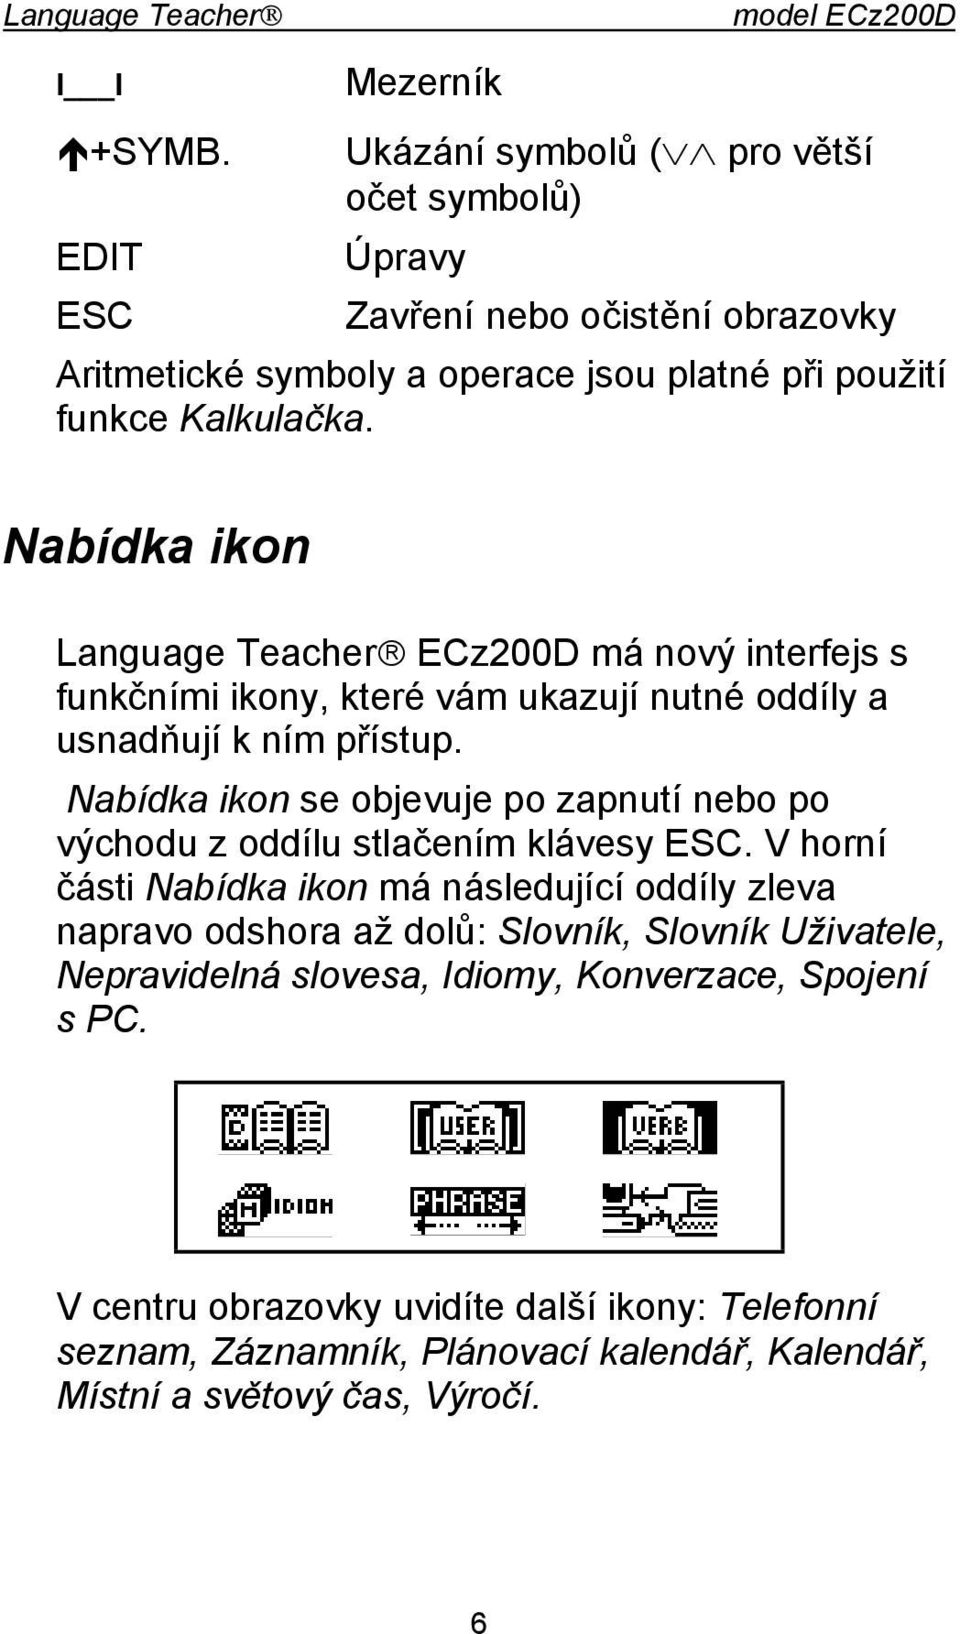 Nabídka ikon Language Teacher ECz200D má nový interfejs s funkčními ikony, které vám ukazují nutné oddíly a usnadňují k ním přístup.